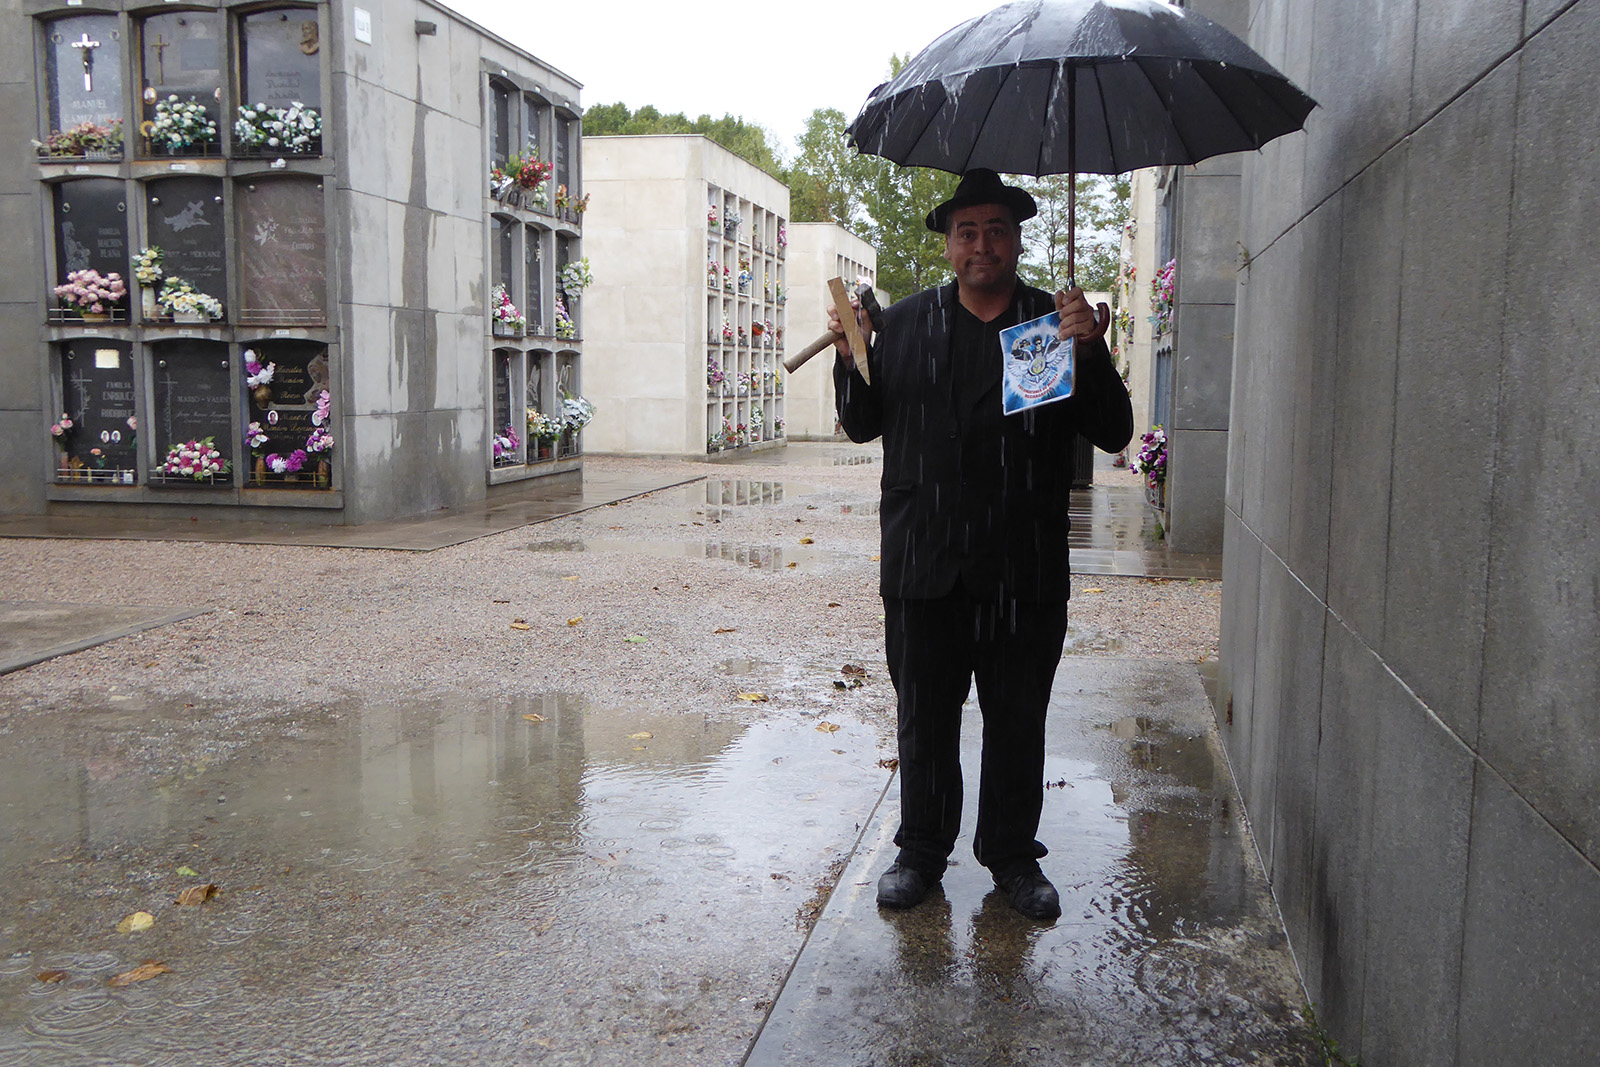 94. En un cementerio, vestido de duelo con un paraguas negro mientras llueve.